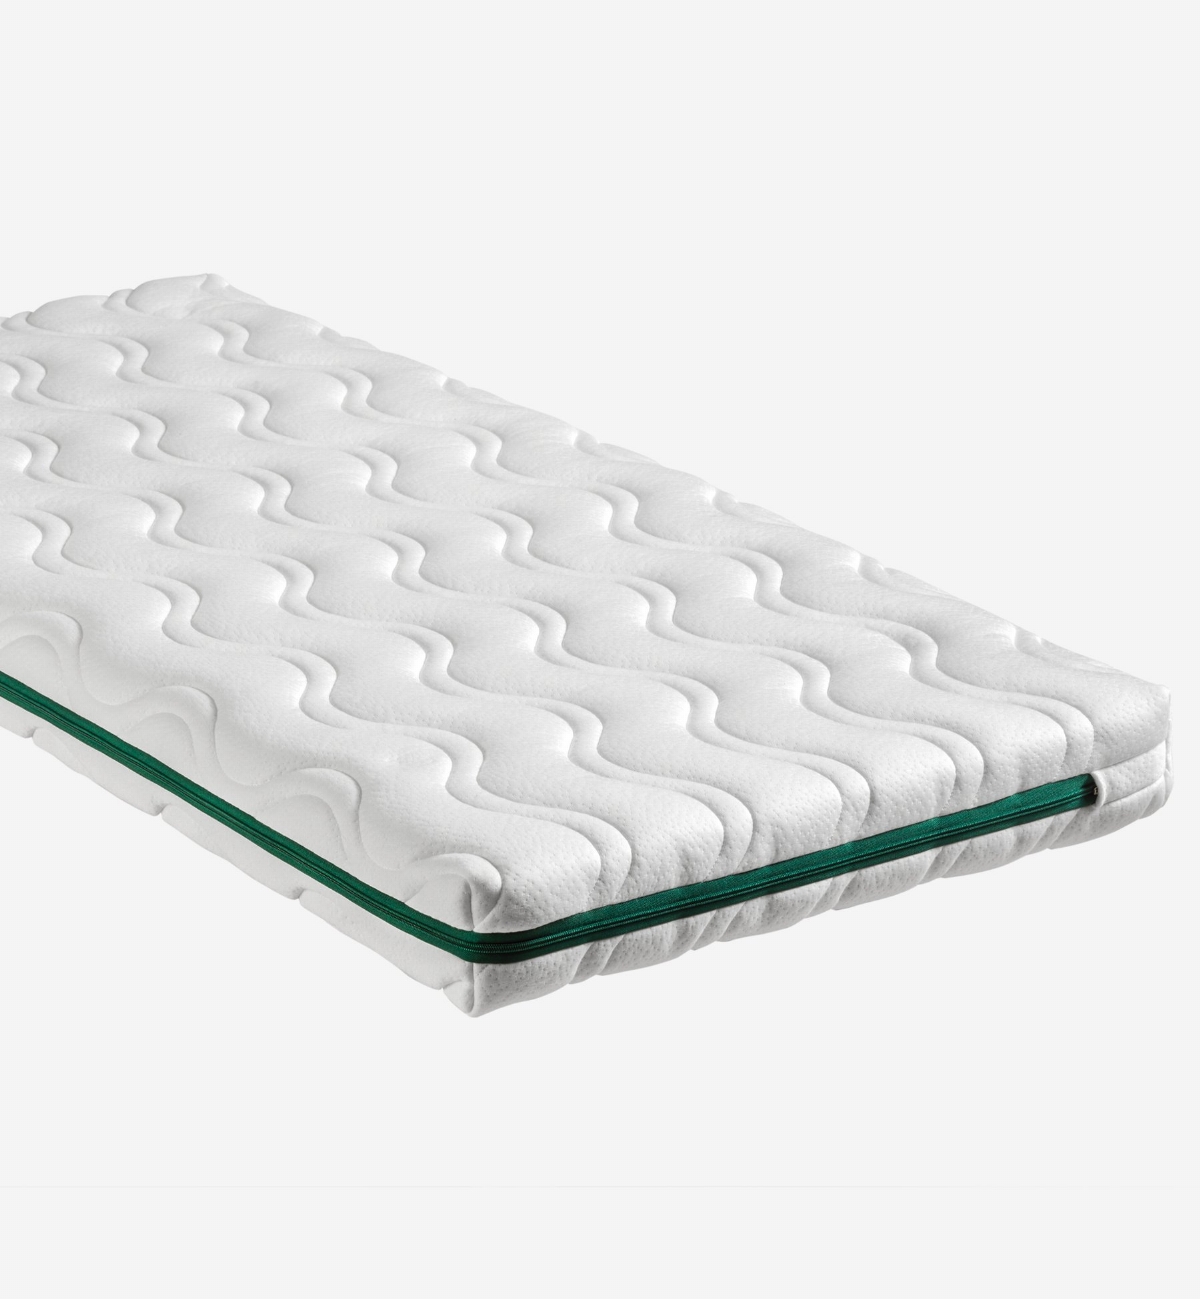 Aloenatura® natural and responsible baby bed mattress